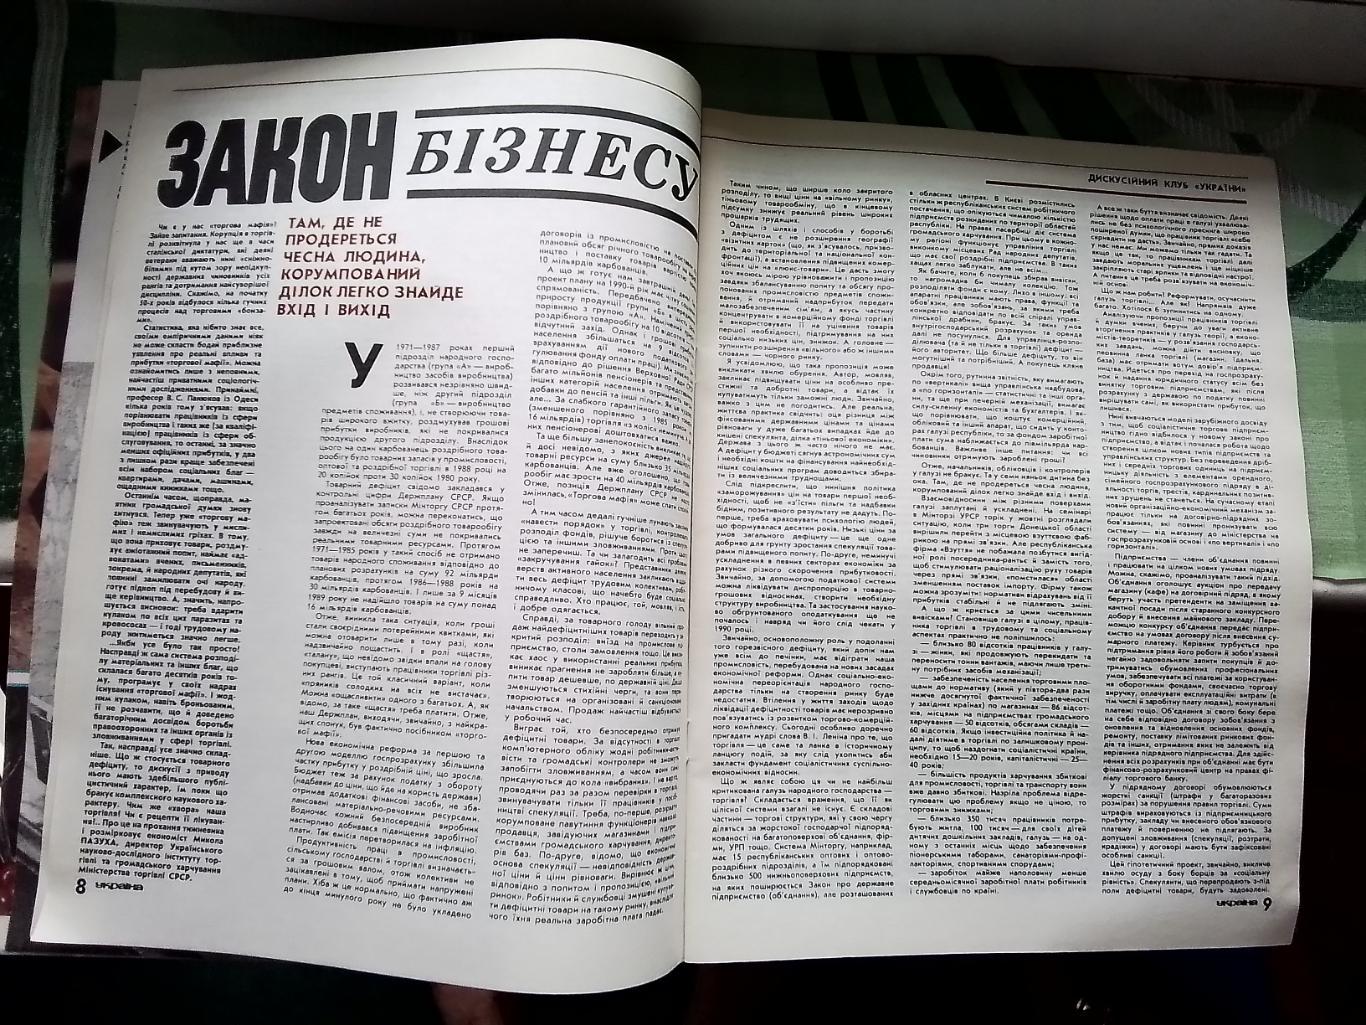 Журнал Украина 1990 7 Бессарабский рынок Киев Разворот картины Александра Жолудя 3